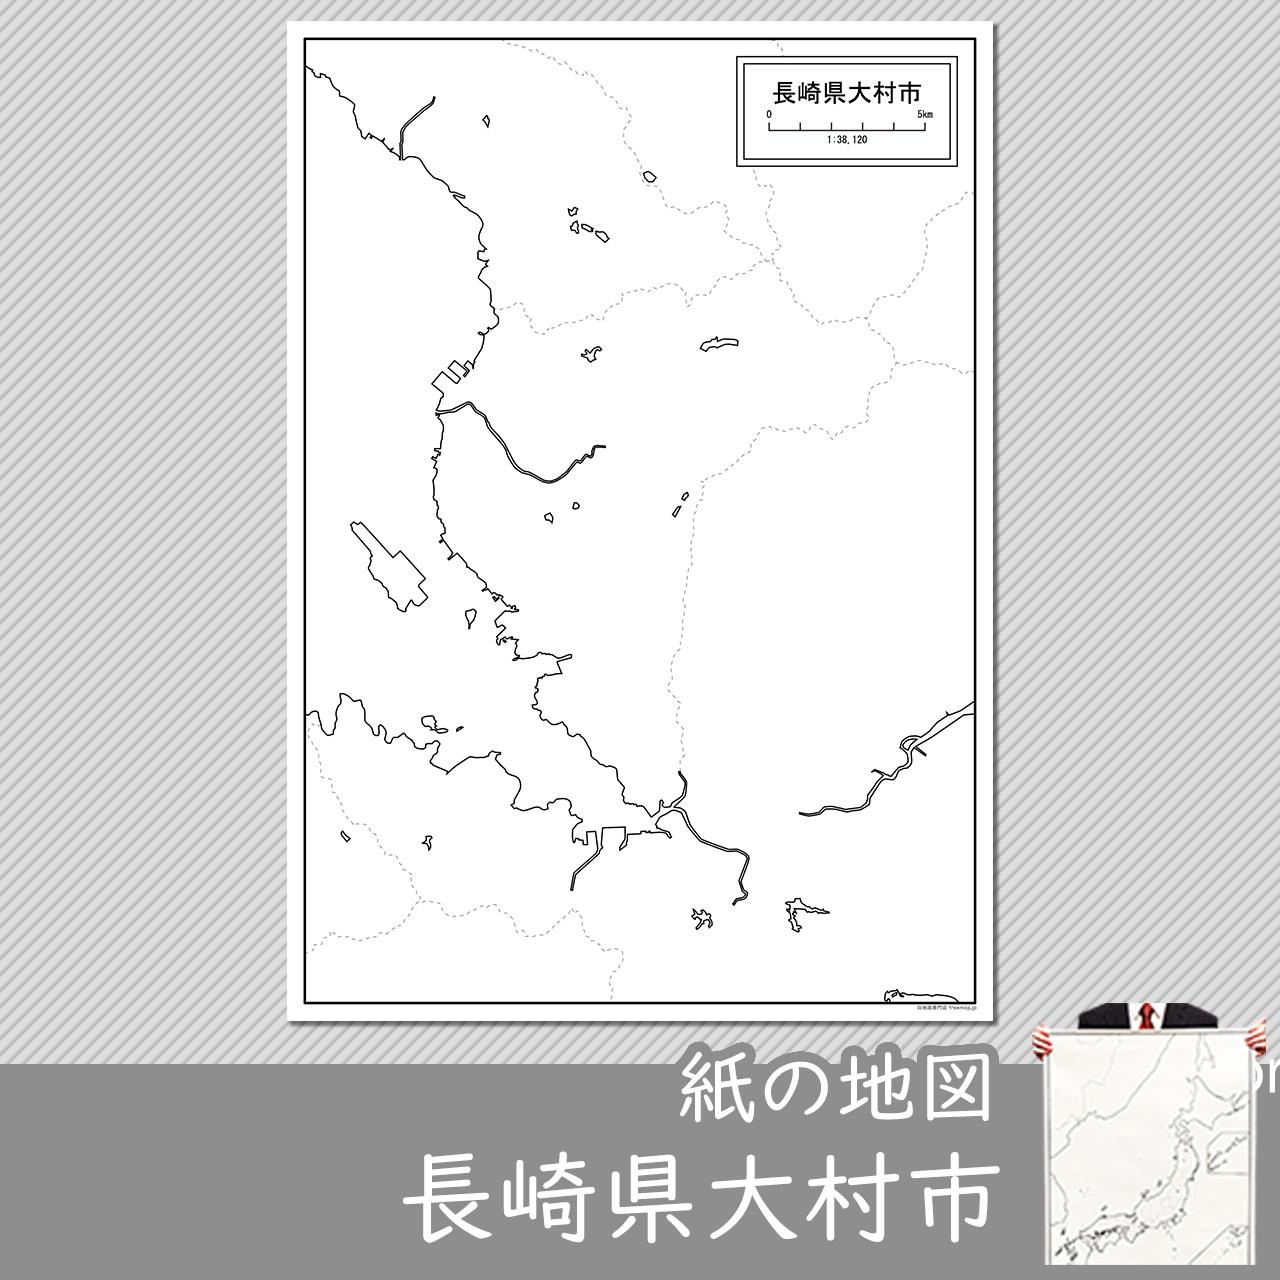 大村市の紙の白地図のサムネイル